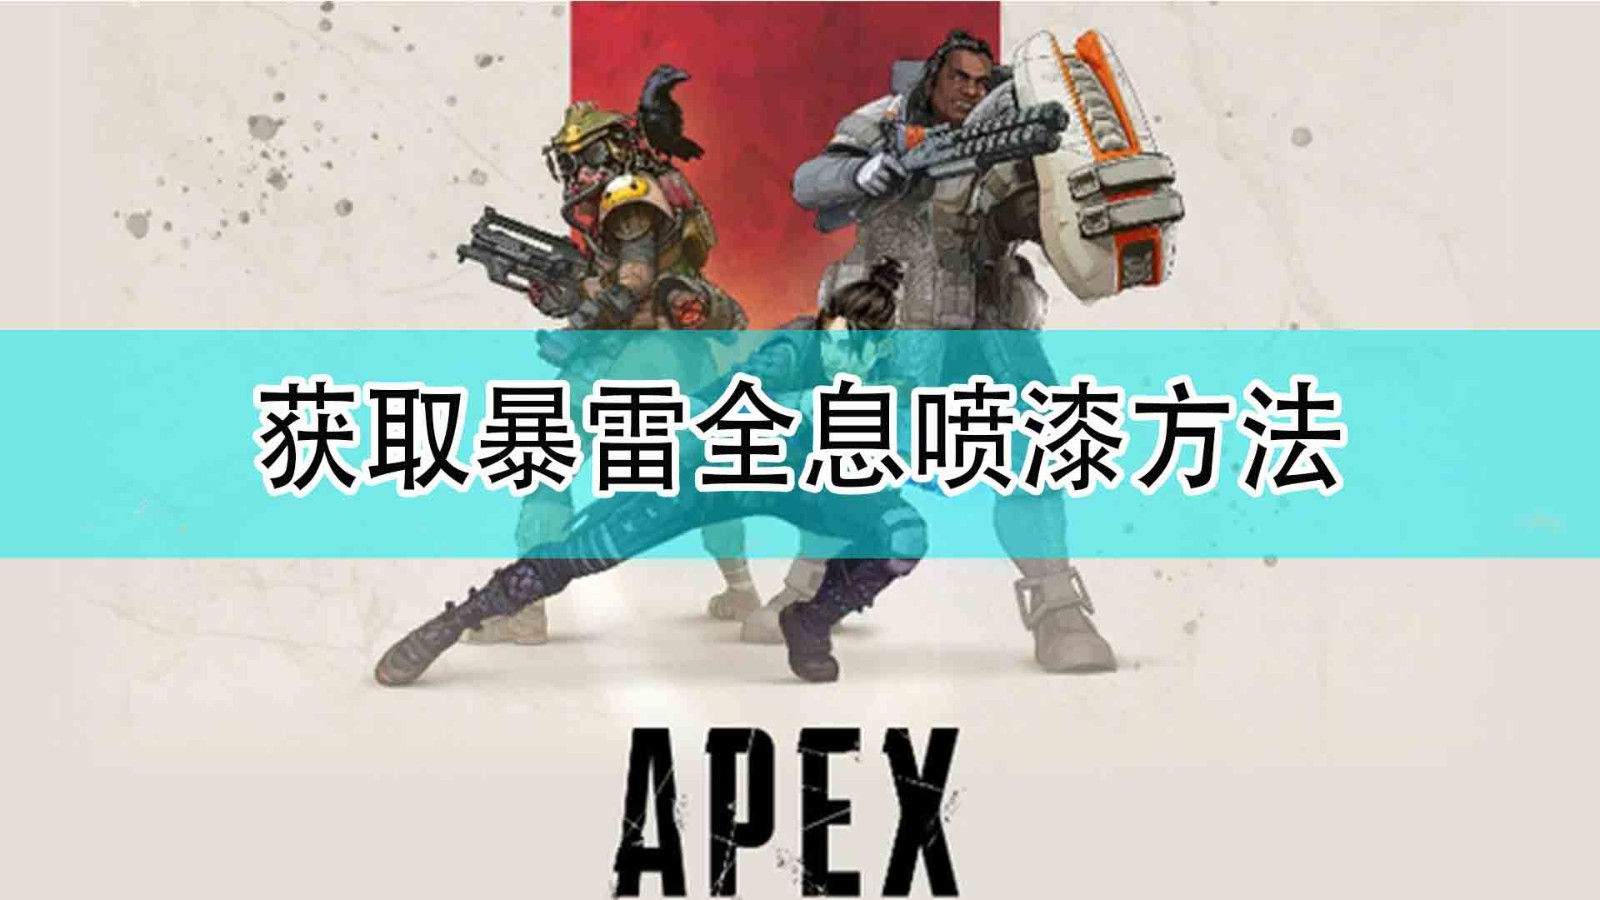 《Apex英雄》获取暴雷全息喷漆方法分享